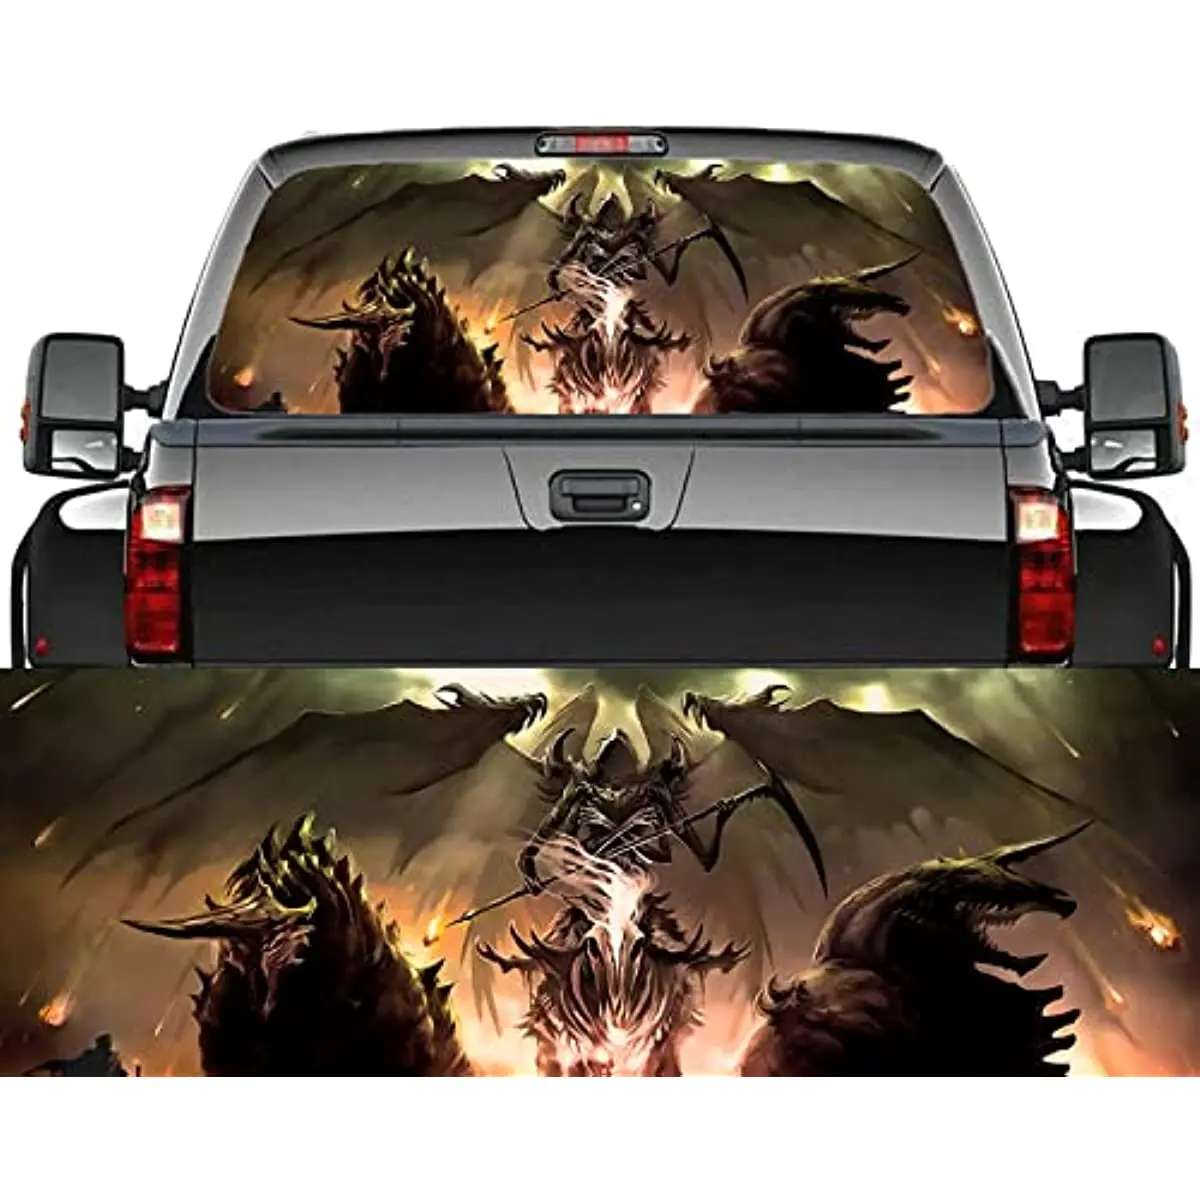 Наклейка на заднее стекло автомобиля Grim Reaper, Графическая перфорированная наклейка, наклейка на заднее стекло грузовика, наклейки на заднее стекло внедорожника, фургона, пикапа.